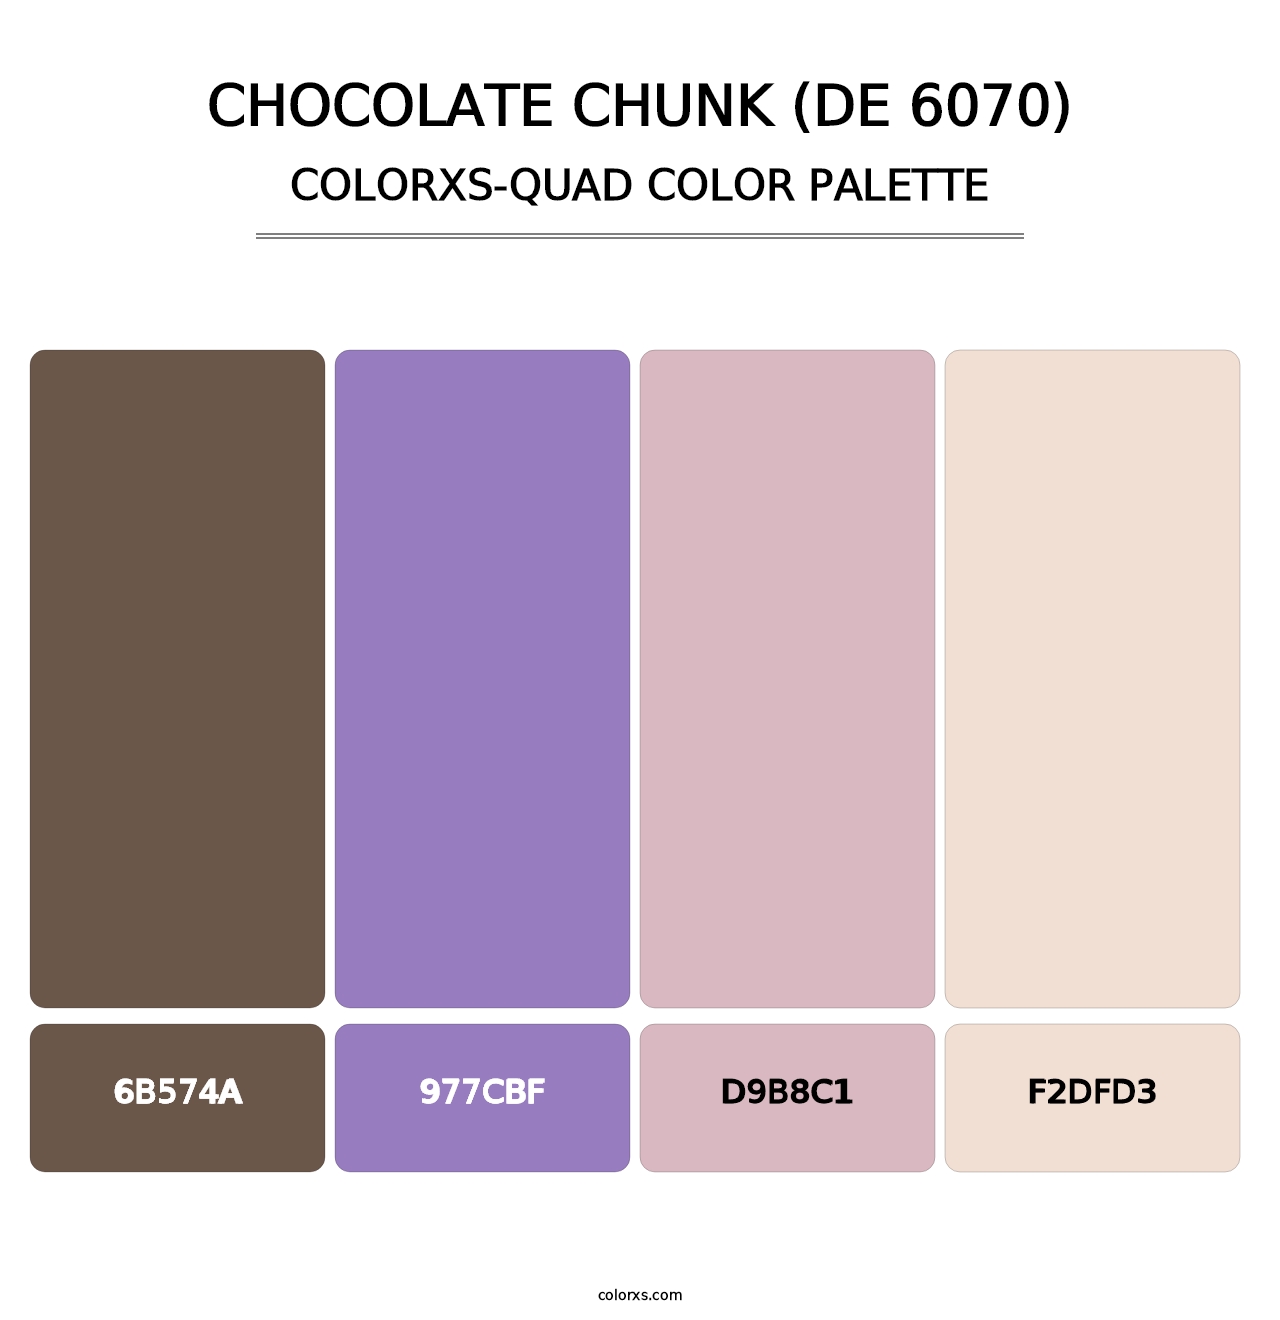 Chocolate Chunk (DE 6070) - Colorxs Quad Palette